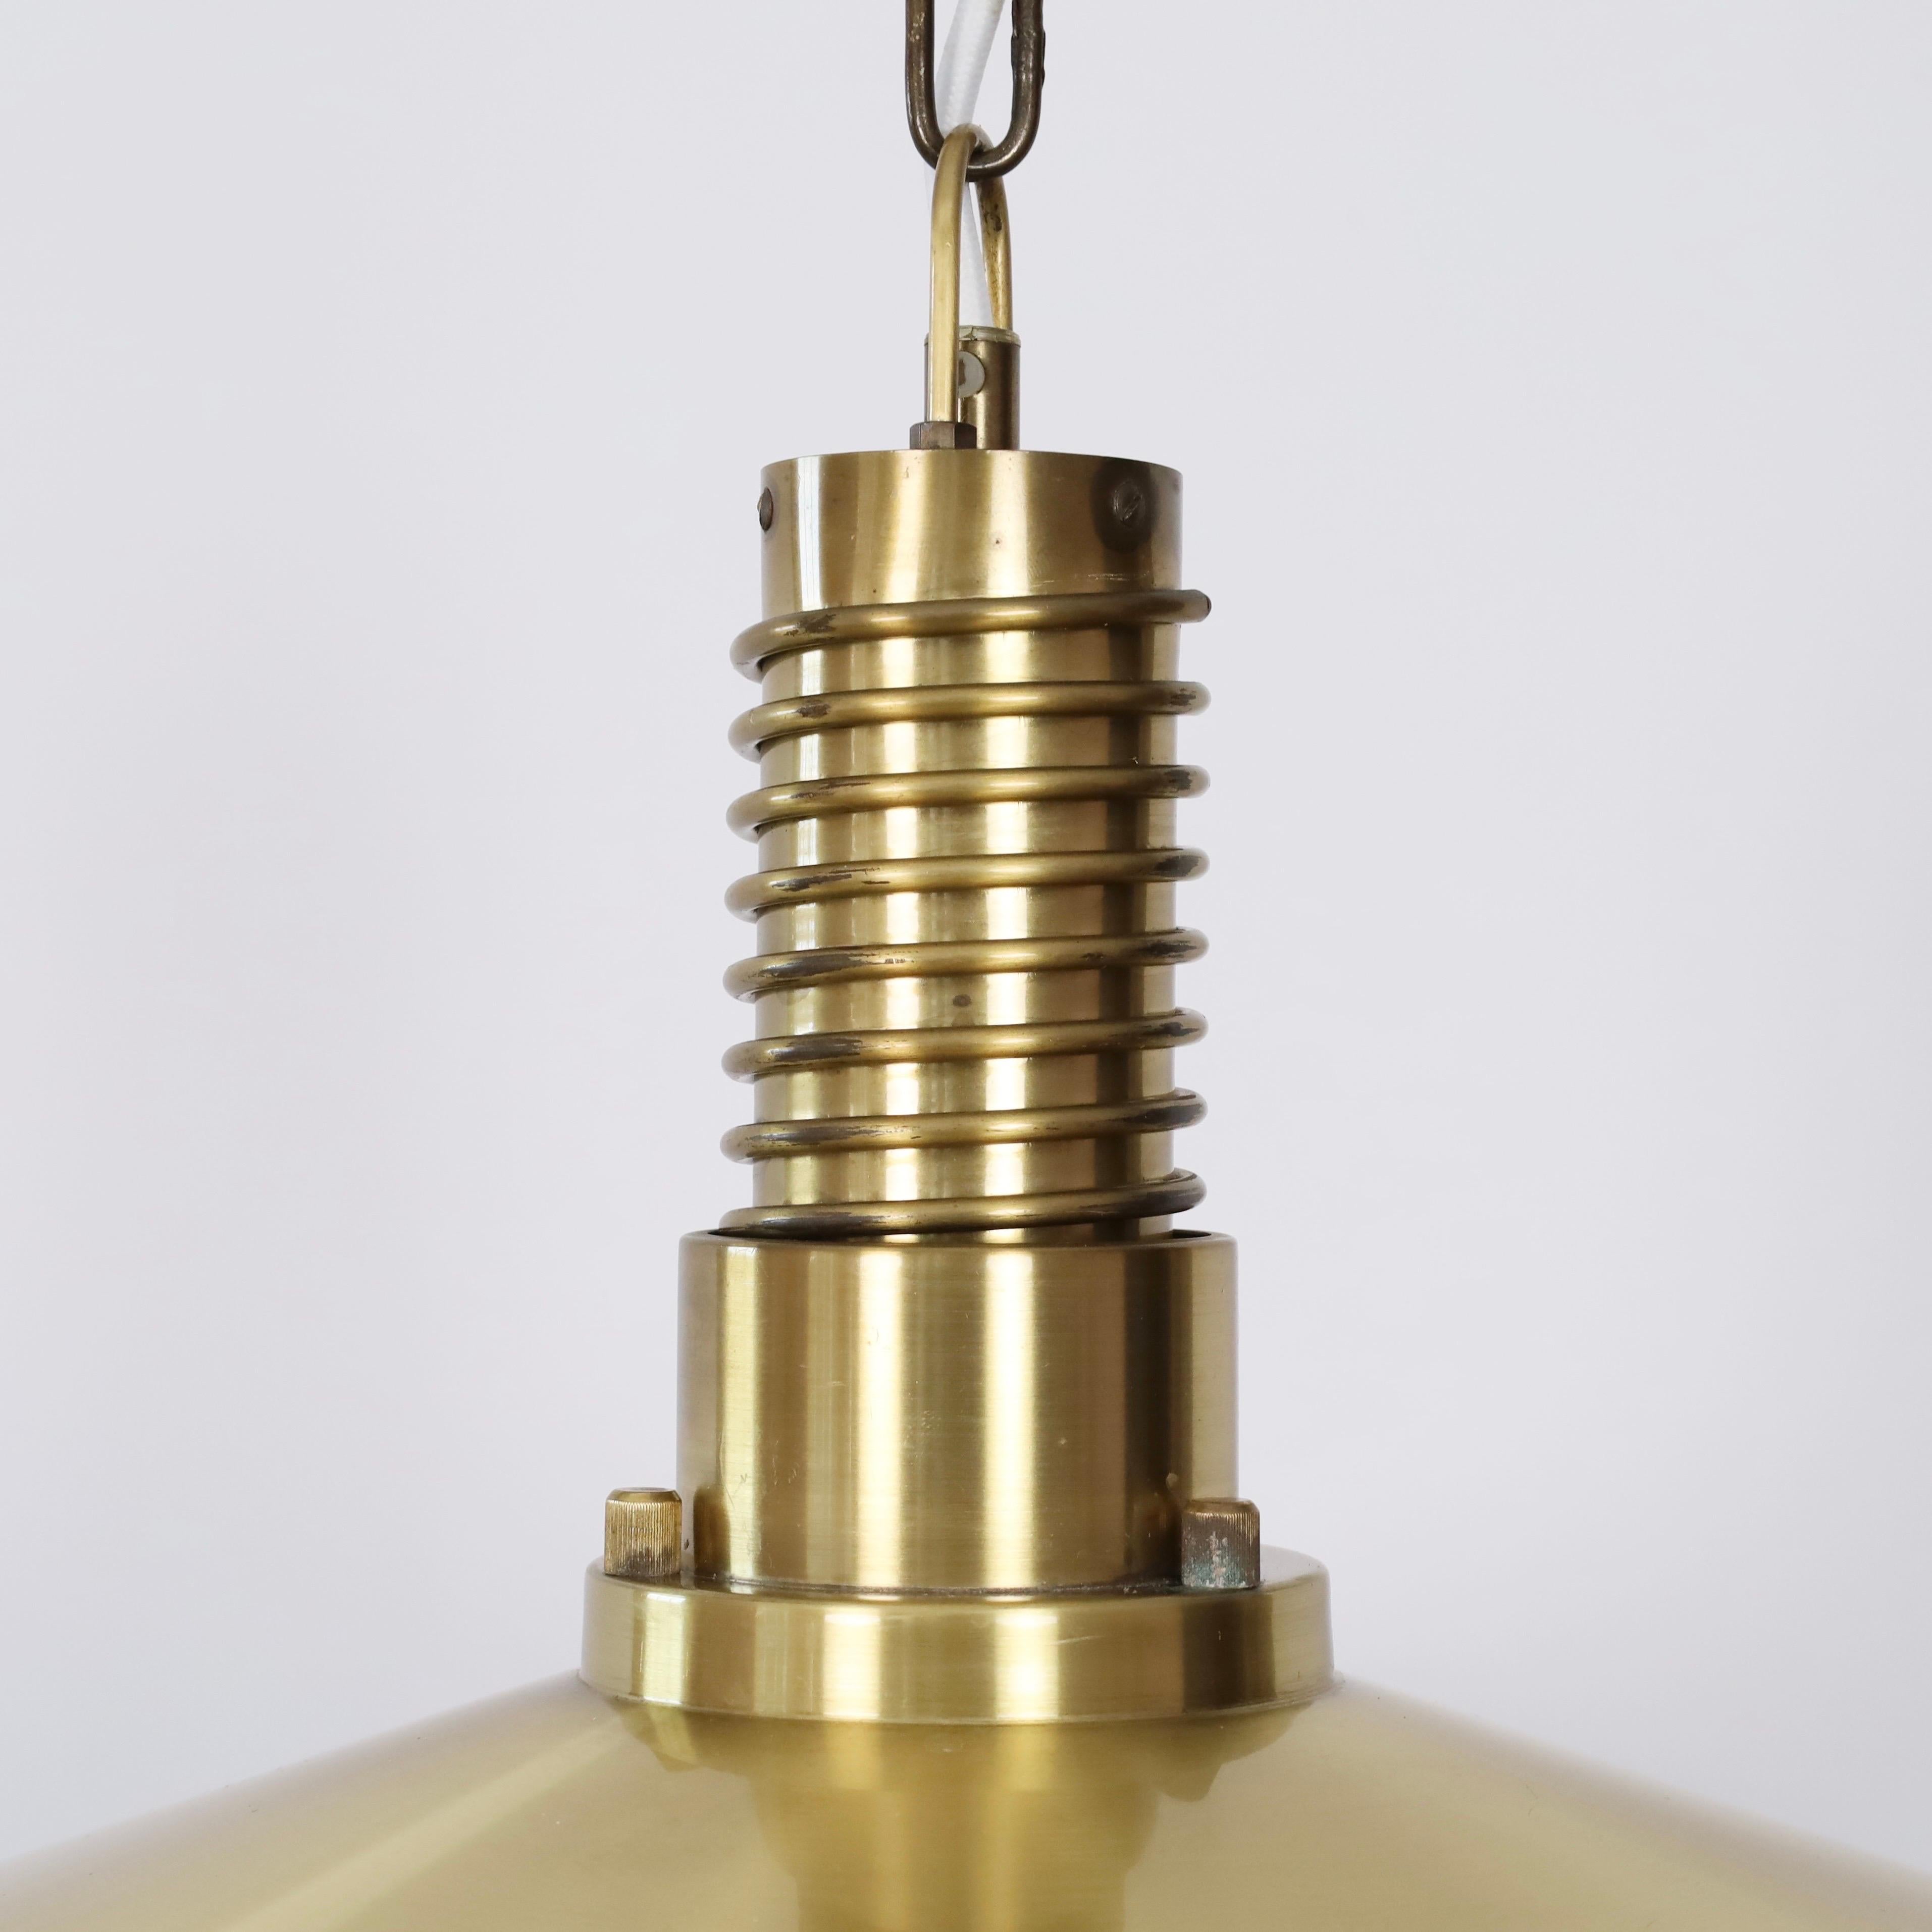 Substantial Danish Modern Brass Pendant Light by Fog & Morup, 1960s, Denmark For Sale 4